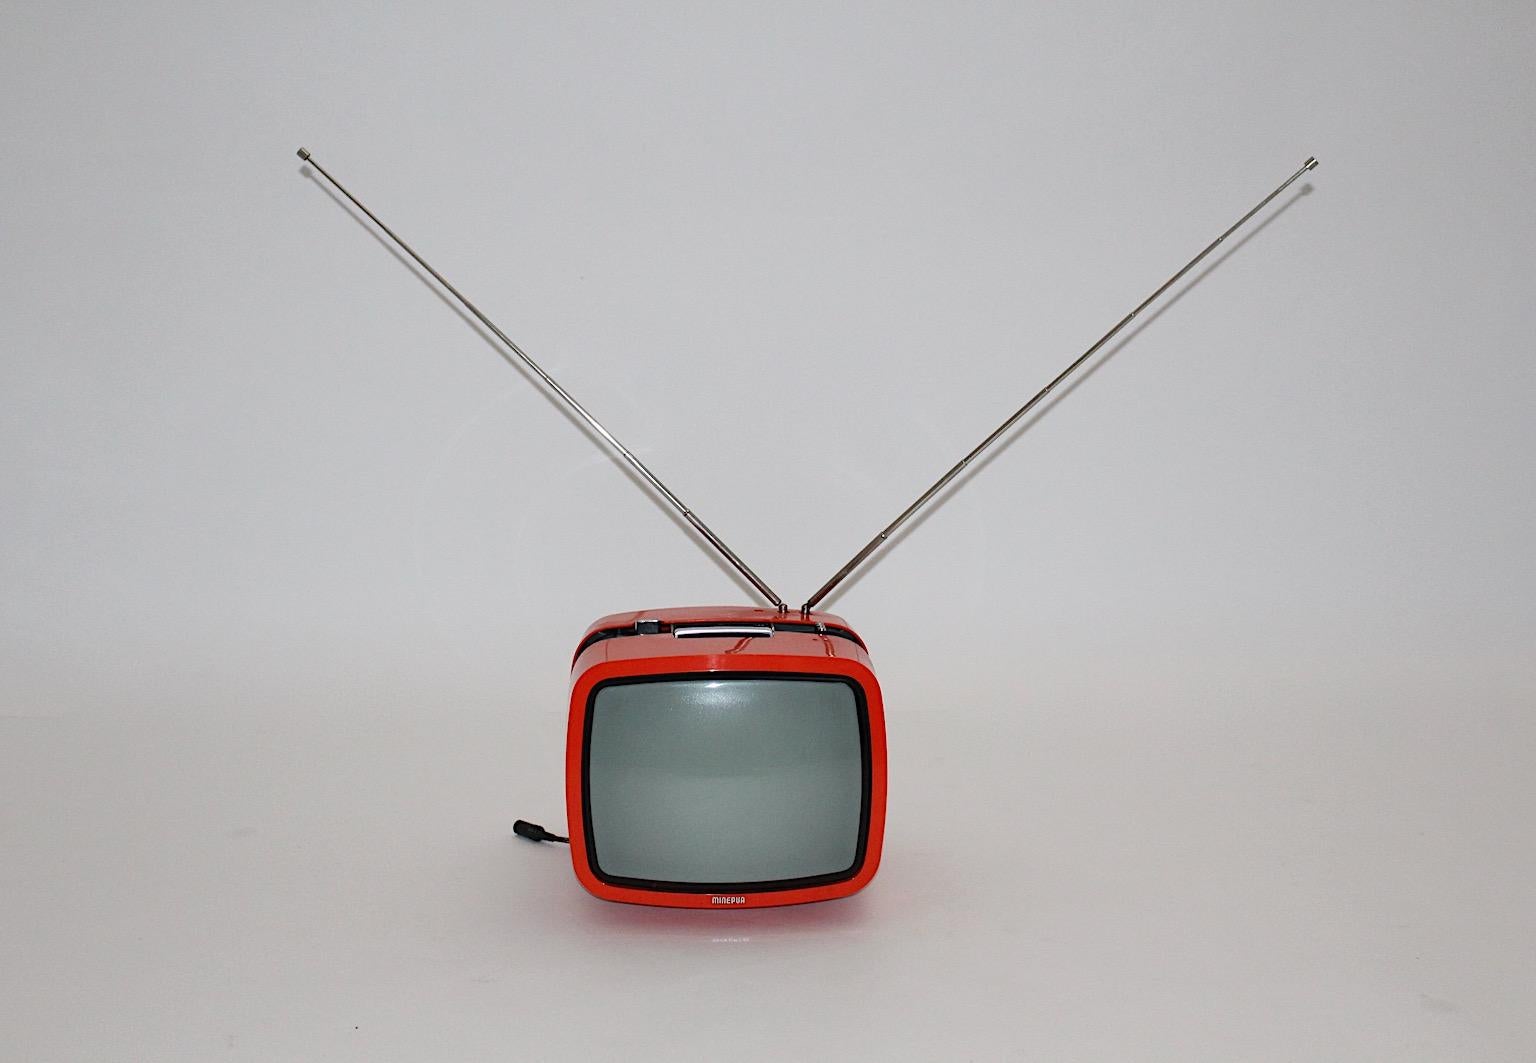 Space Age orange vintage Fernseher aus Kunststoff Modell Ikaro von Minerva, 1970er Jahre, Österreich.
Dieser tragbare Fernseher mit orangefarbenem Kunststoffgehäuse von Minerva, Österreich, wurde in den 1970er Jahren für den italienischen und